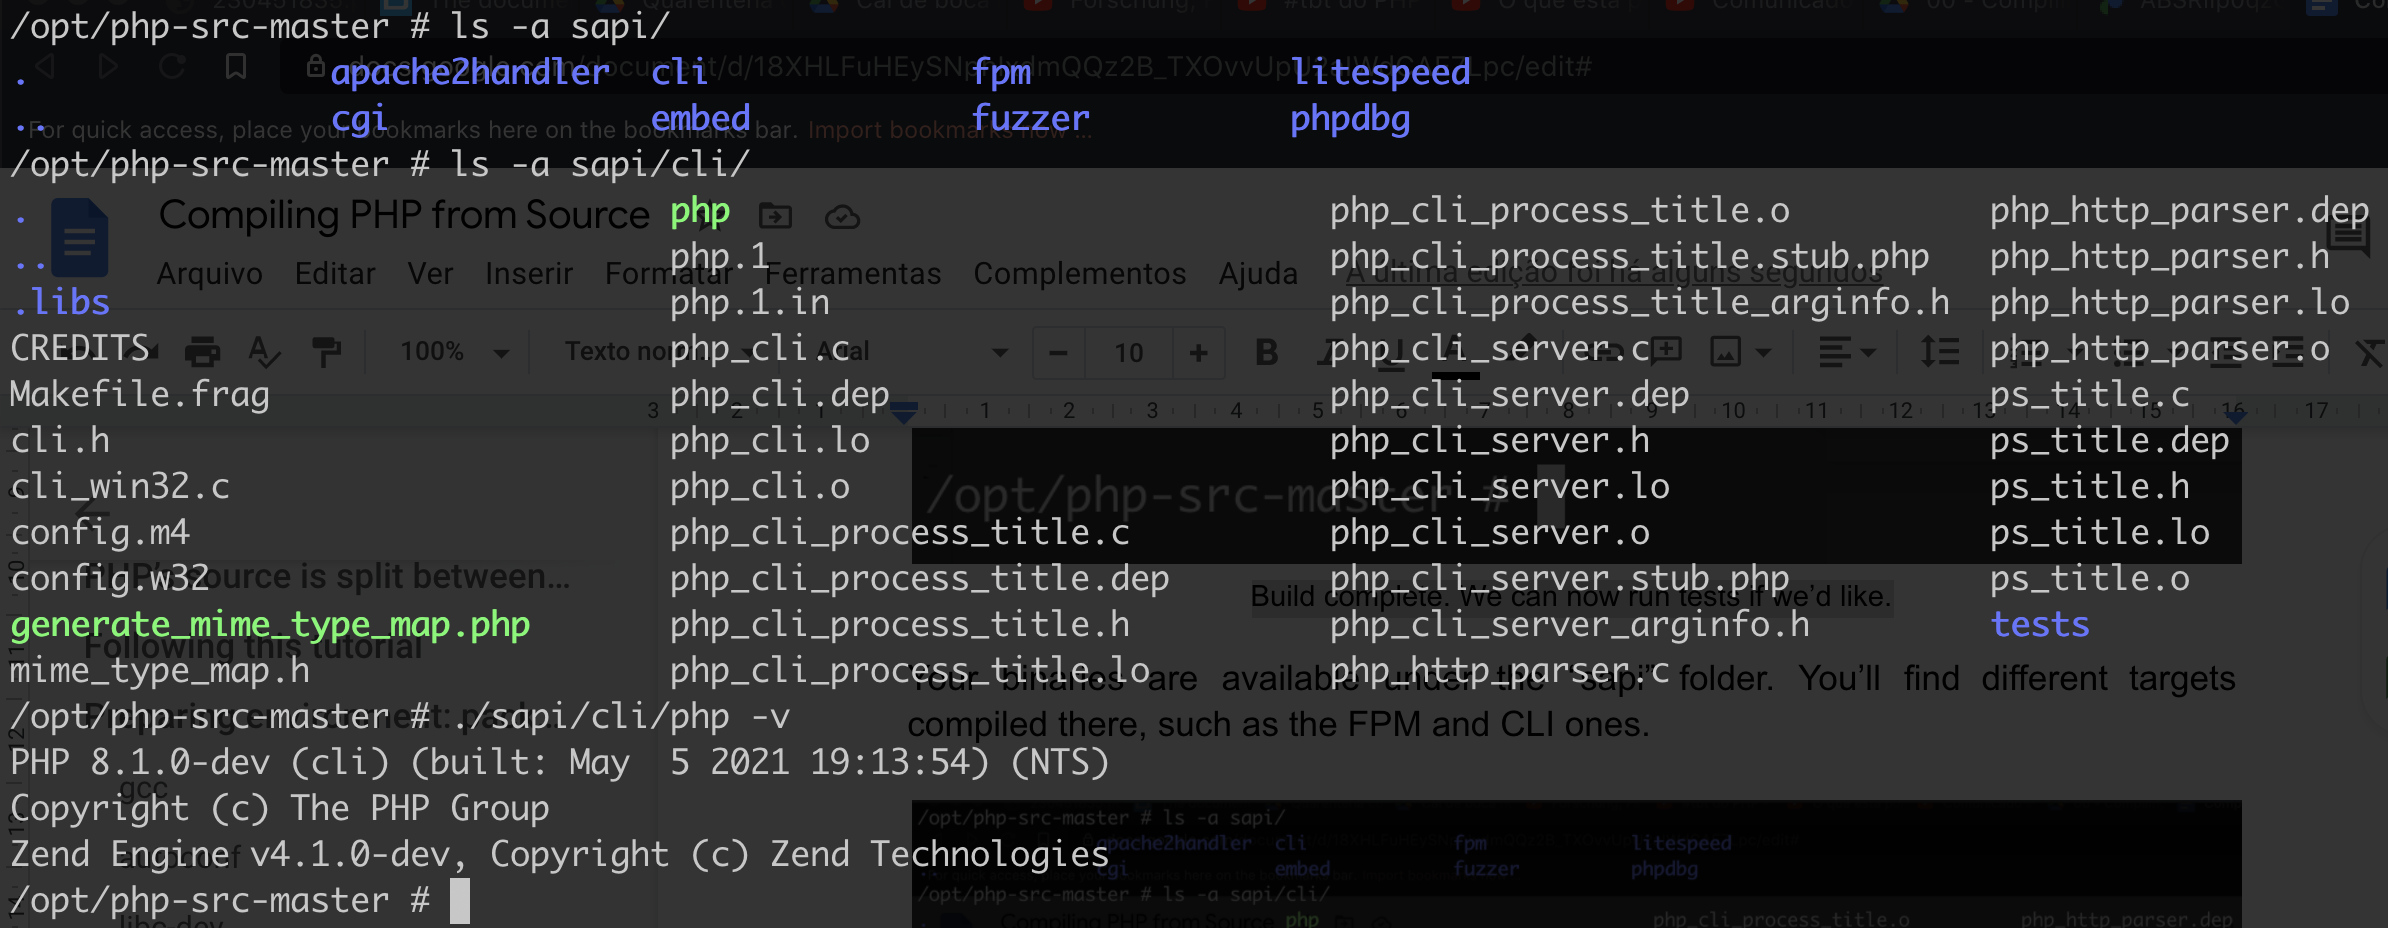 Binários dentro da pasta "sapi/". A imagem mostra a execução do comando "php -v" utilizando o binário CLI.